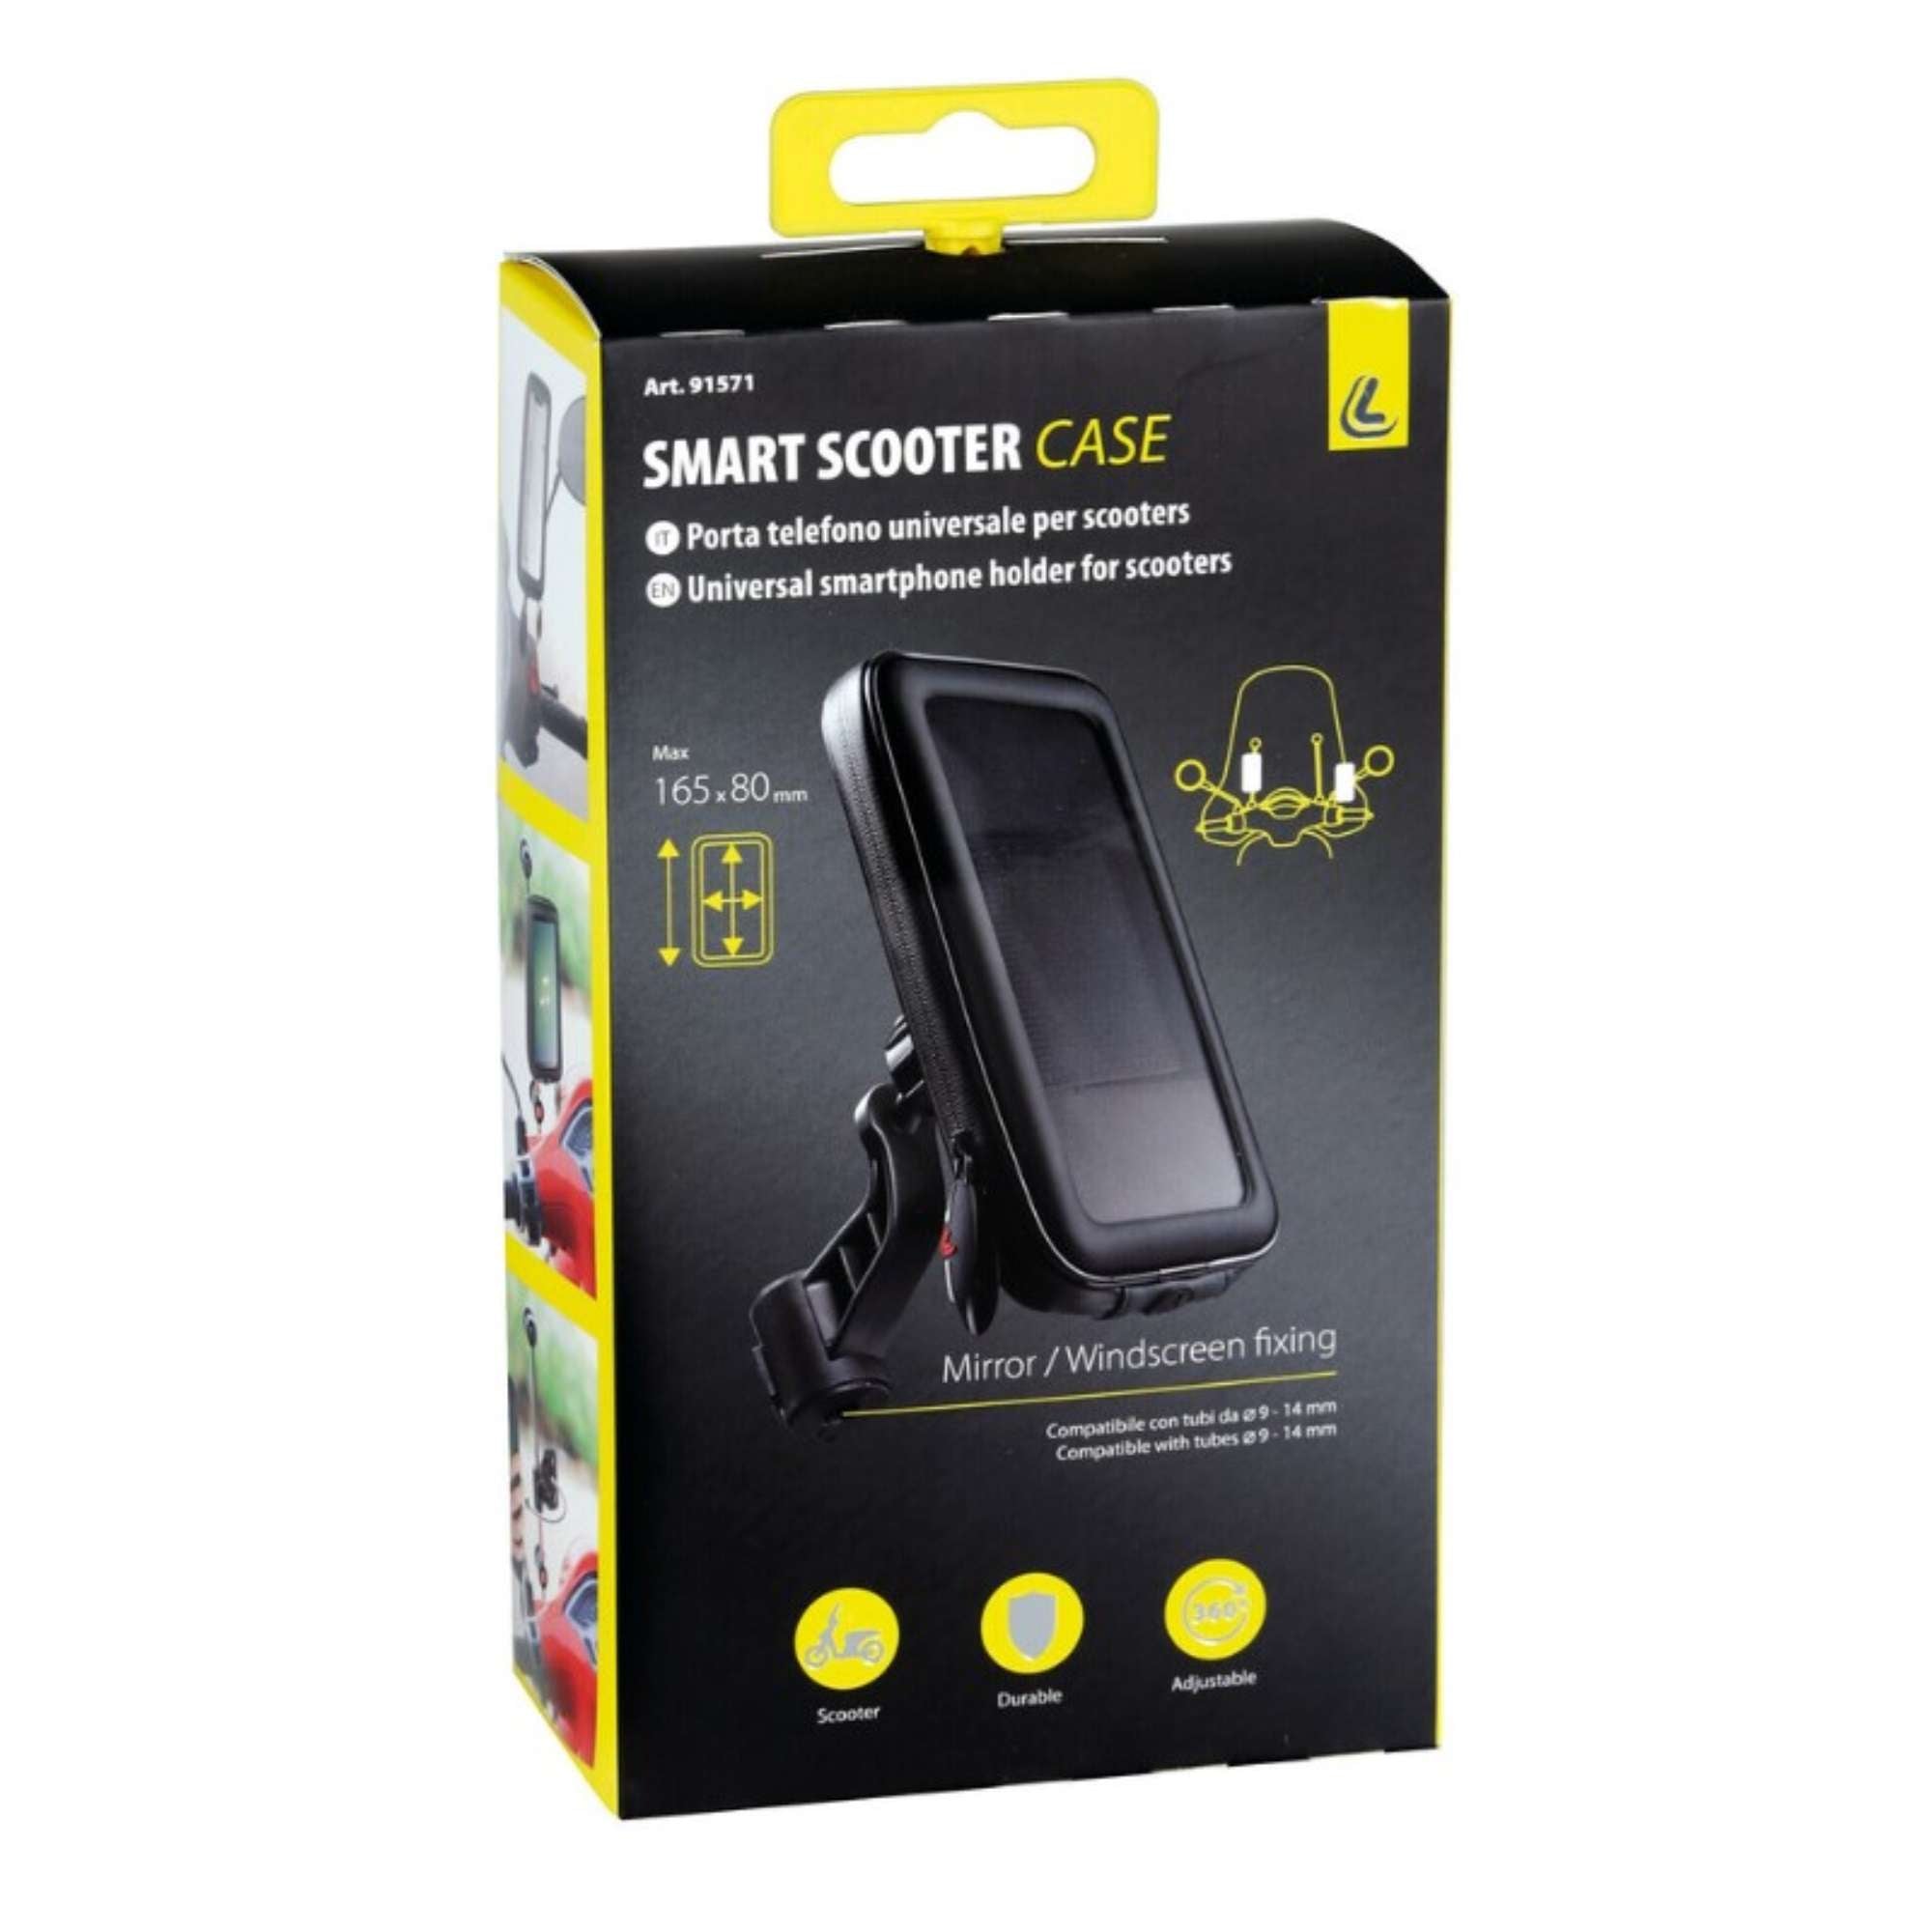 Smart Scooter Case, porta telefono universale per scooter - Lampa